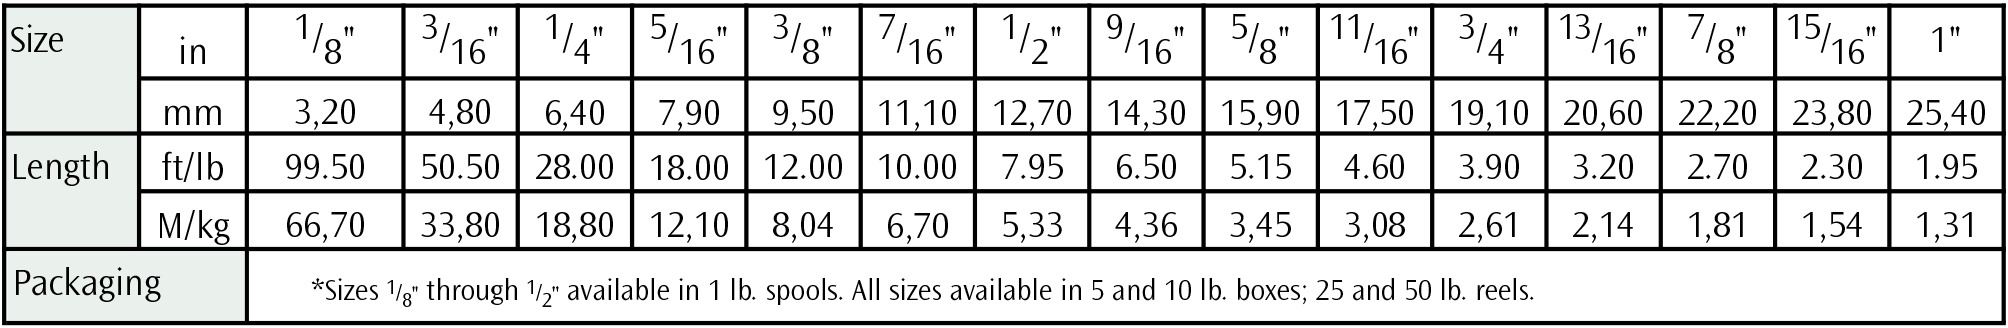 Datasheet 1007AF Table